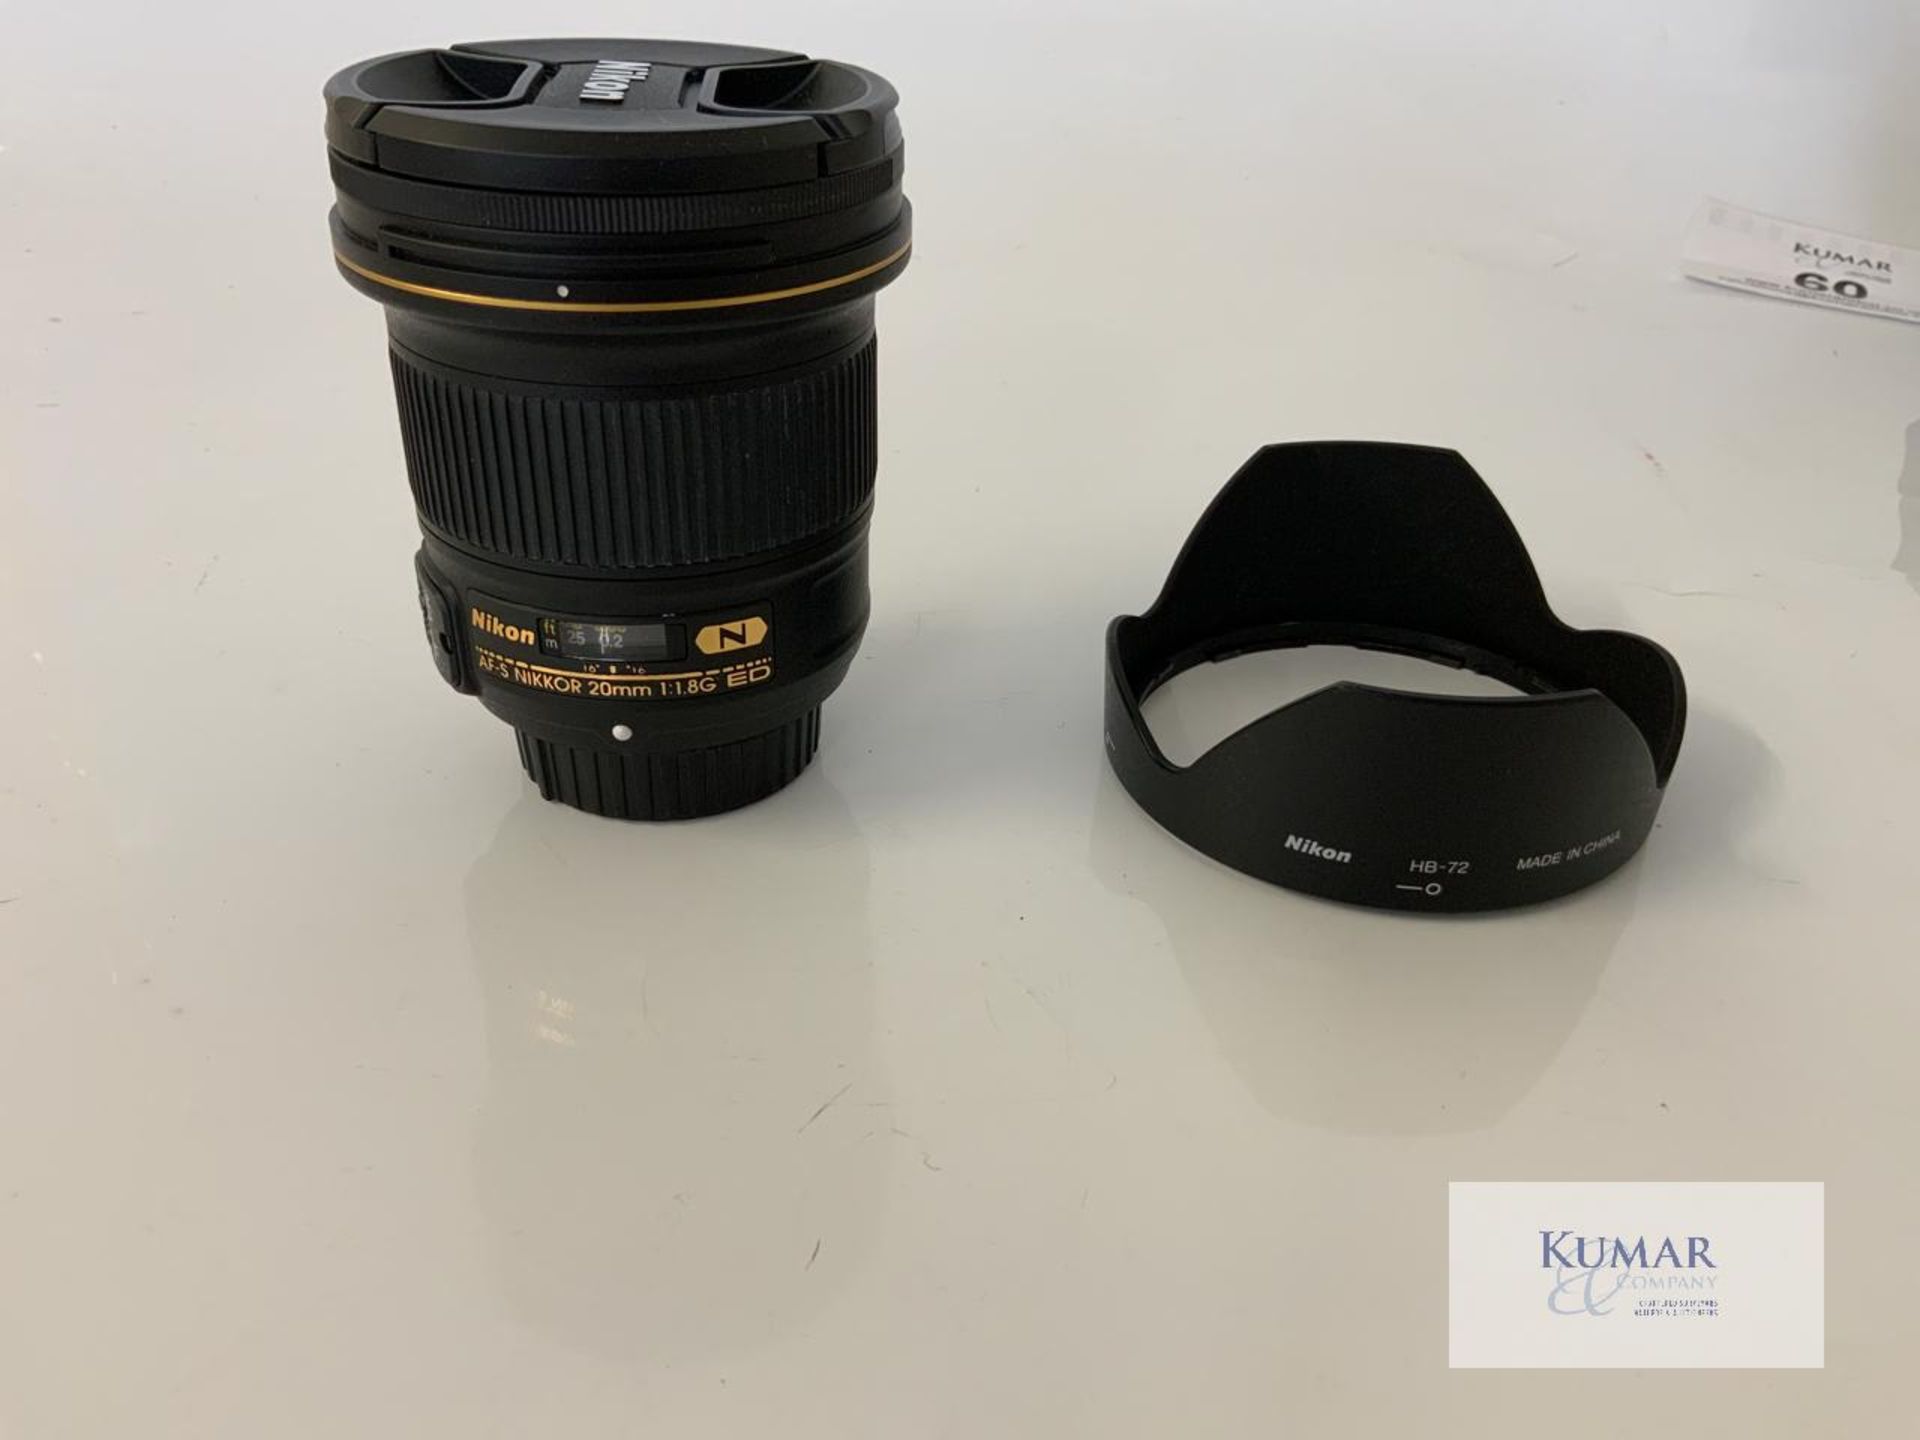 Nikon AF-S Nikkor 20mm 1:1.8G ED Zoom Lens with Nikon HB 72 Lens Hood & Carry Case - Image 3 of 10